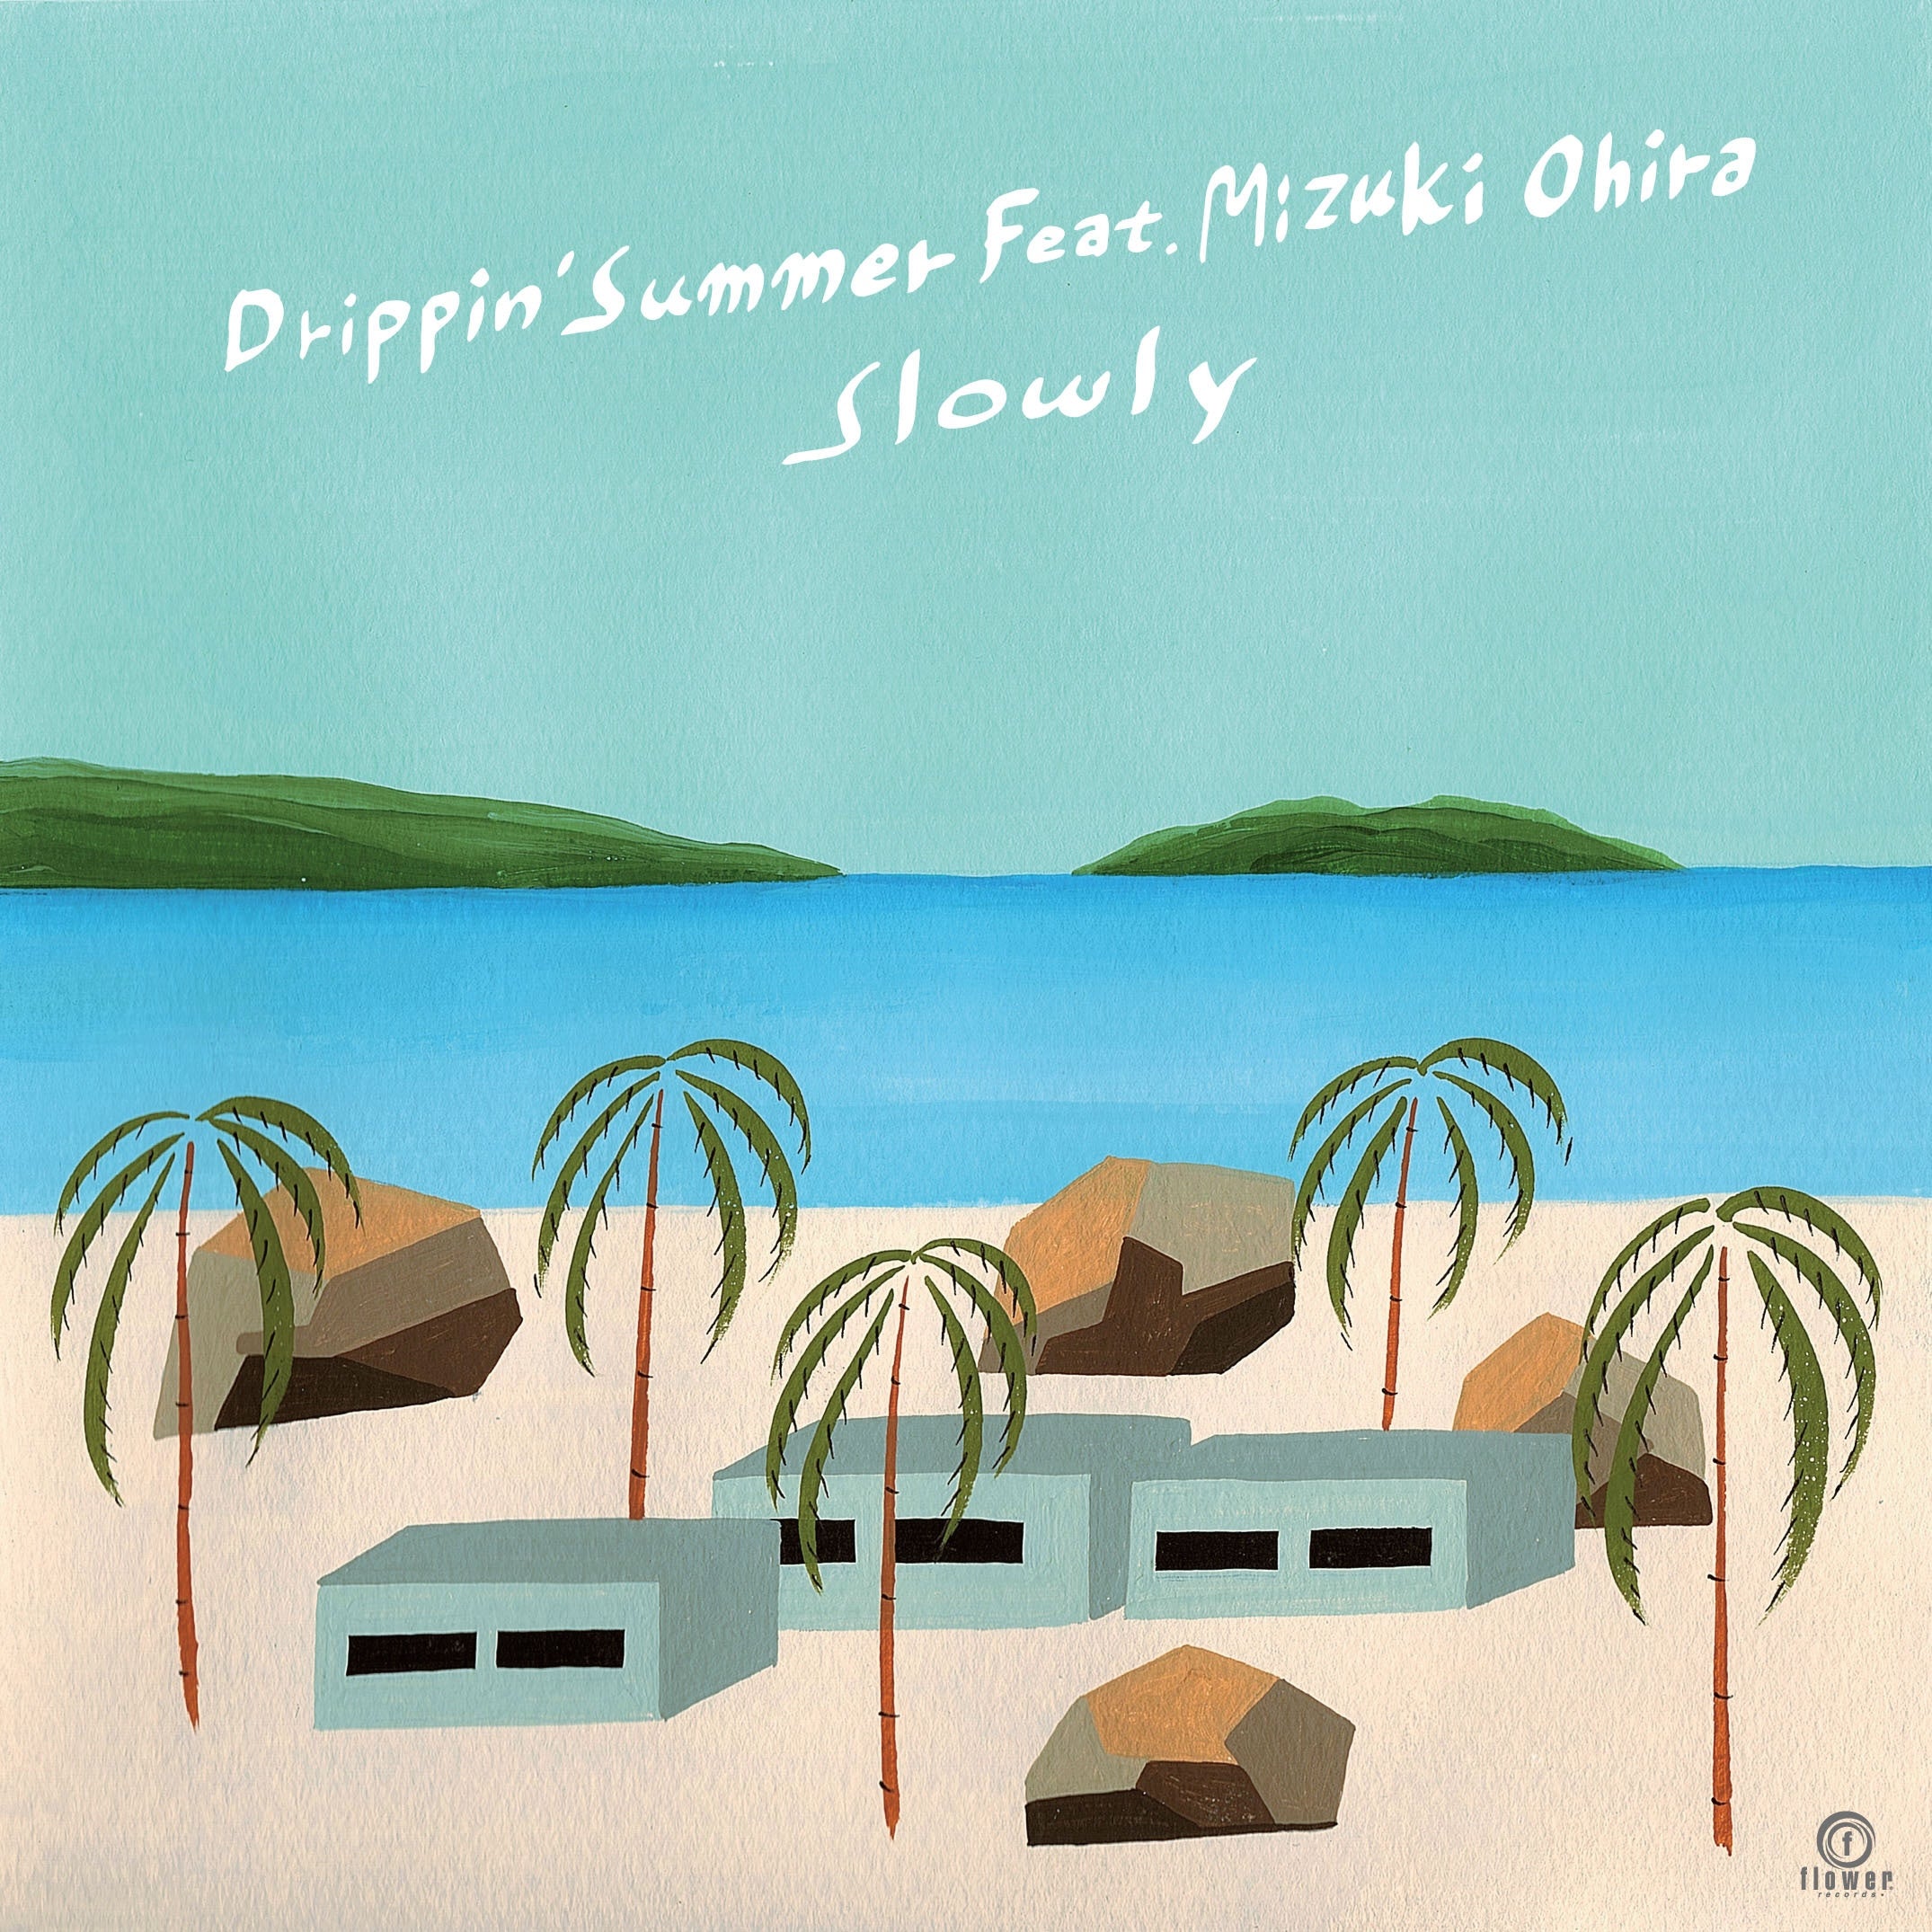 Slowly feat. Mizuki Ohira - Drippin' Summer